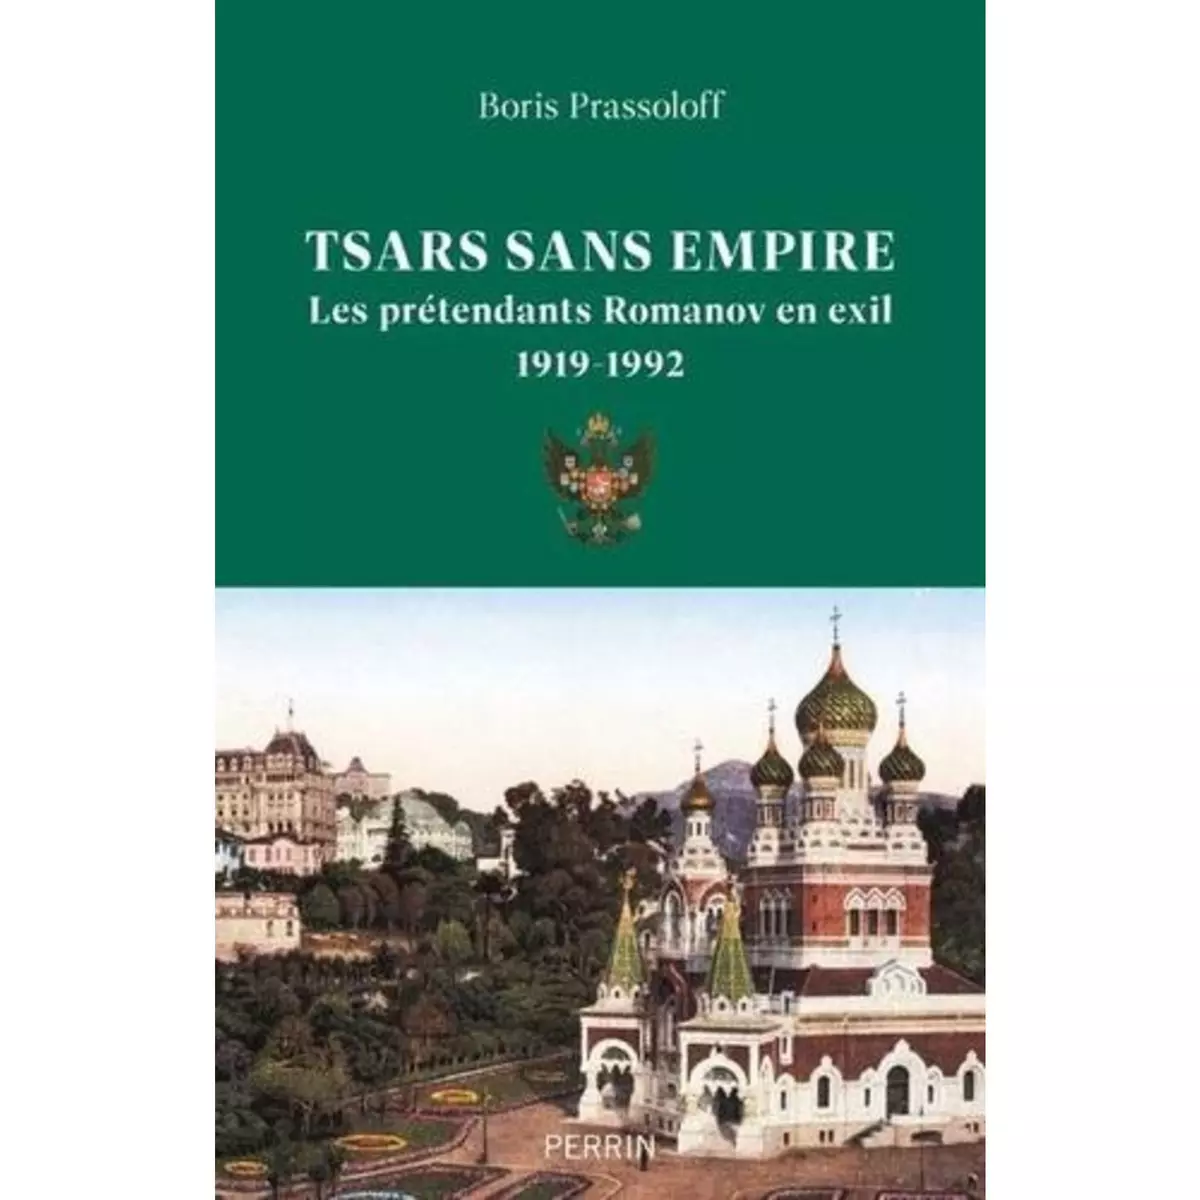  TSARS SANS EMPIRE. LES ROMANOV EN EXIL, 1919-1992, Prassoloff Boris